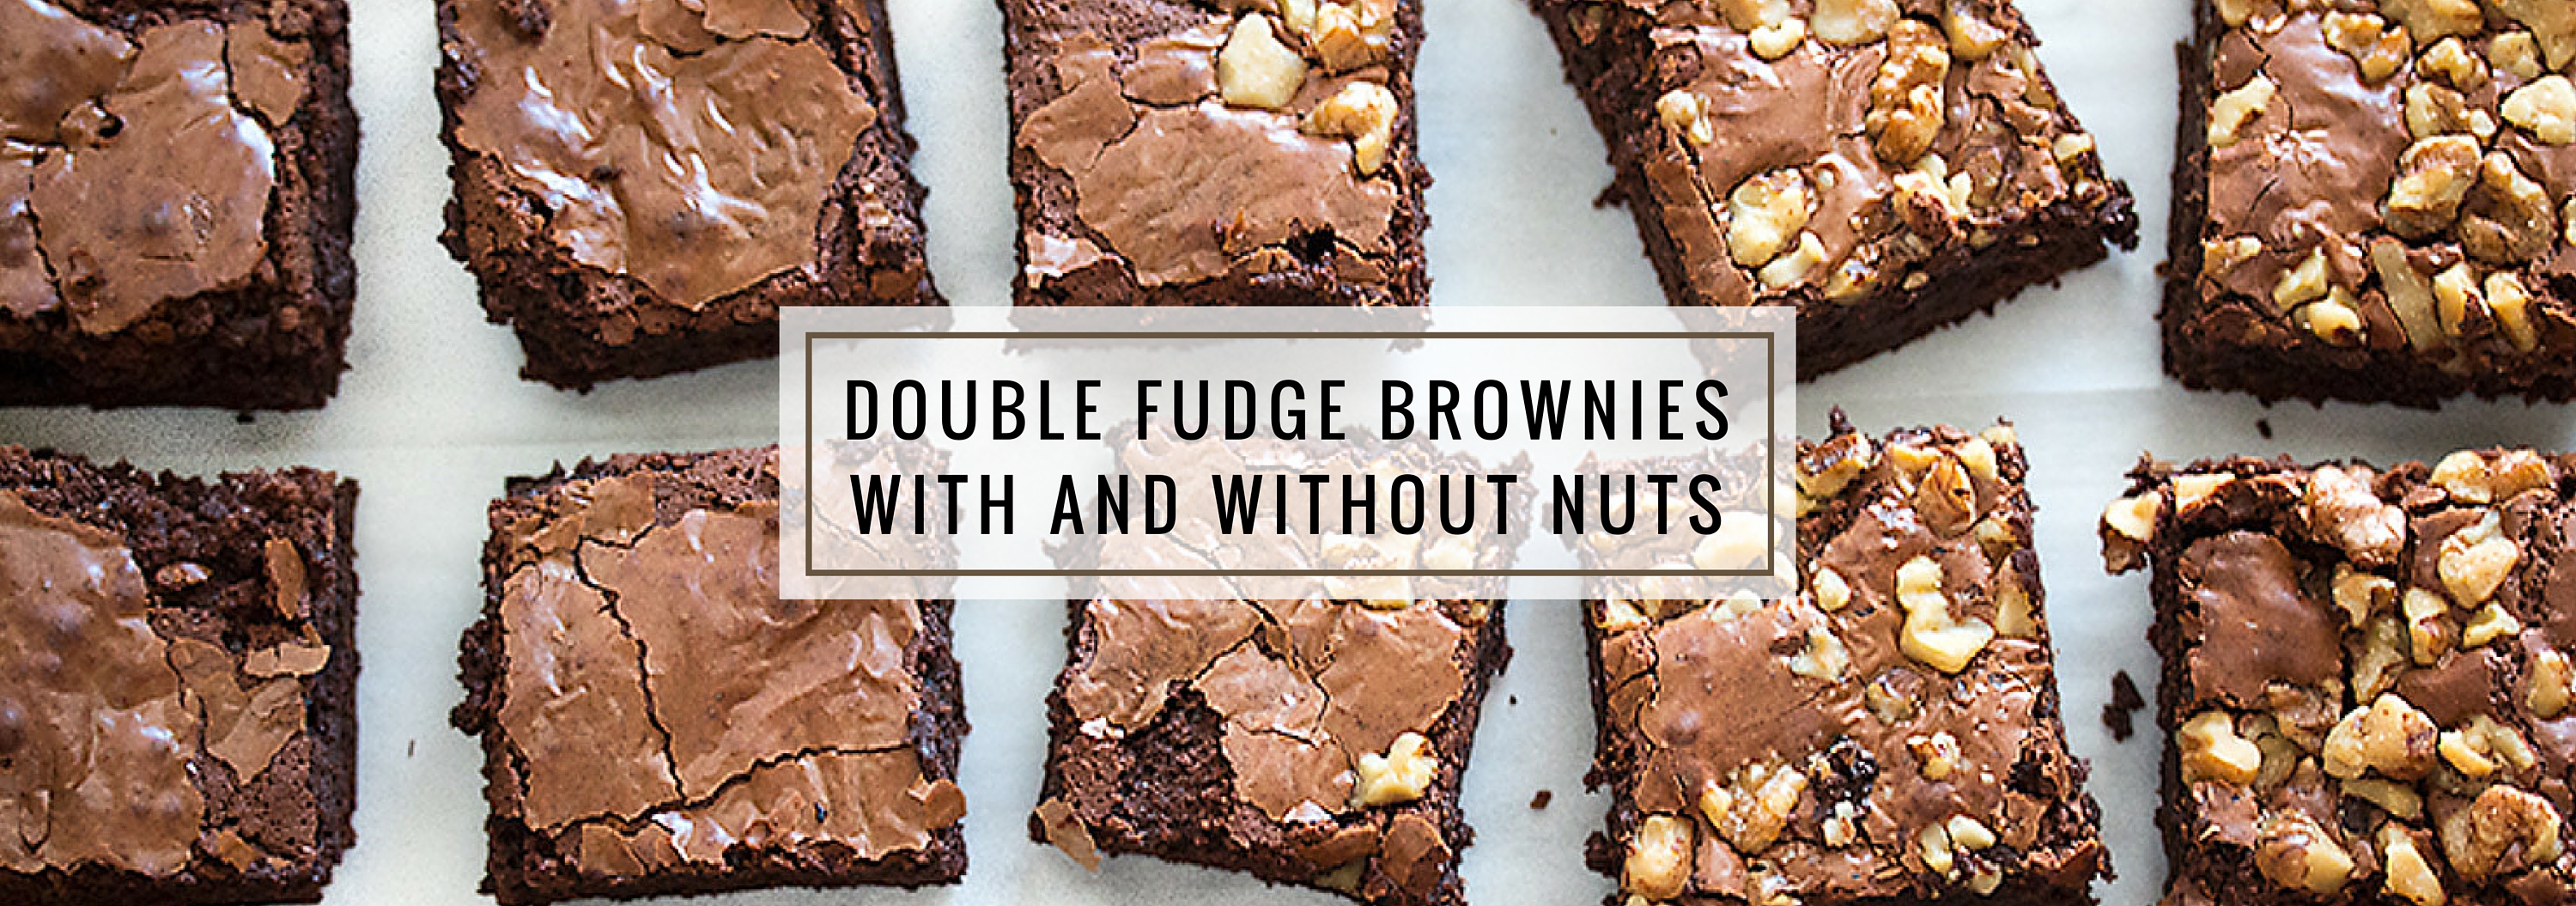 Double Fudge Brownies